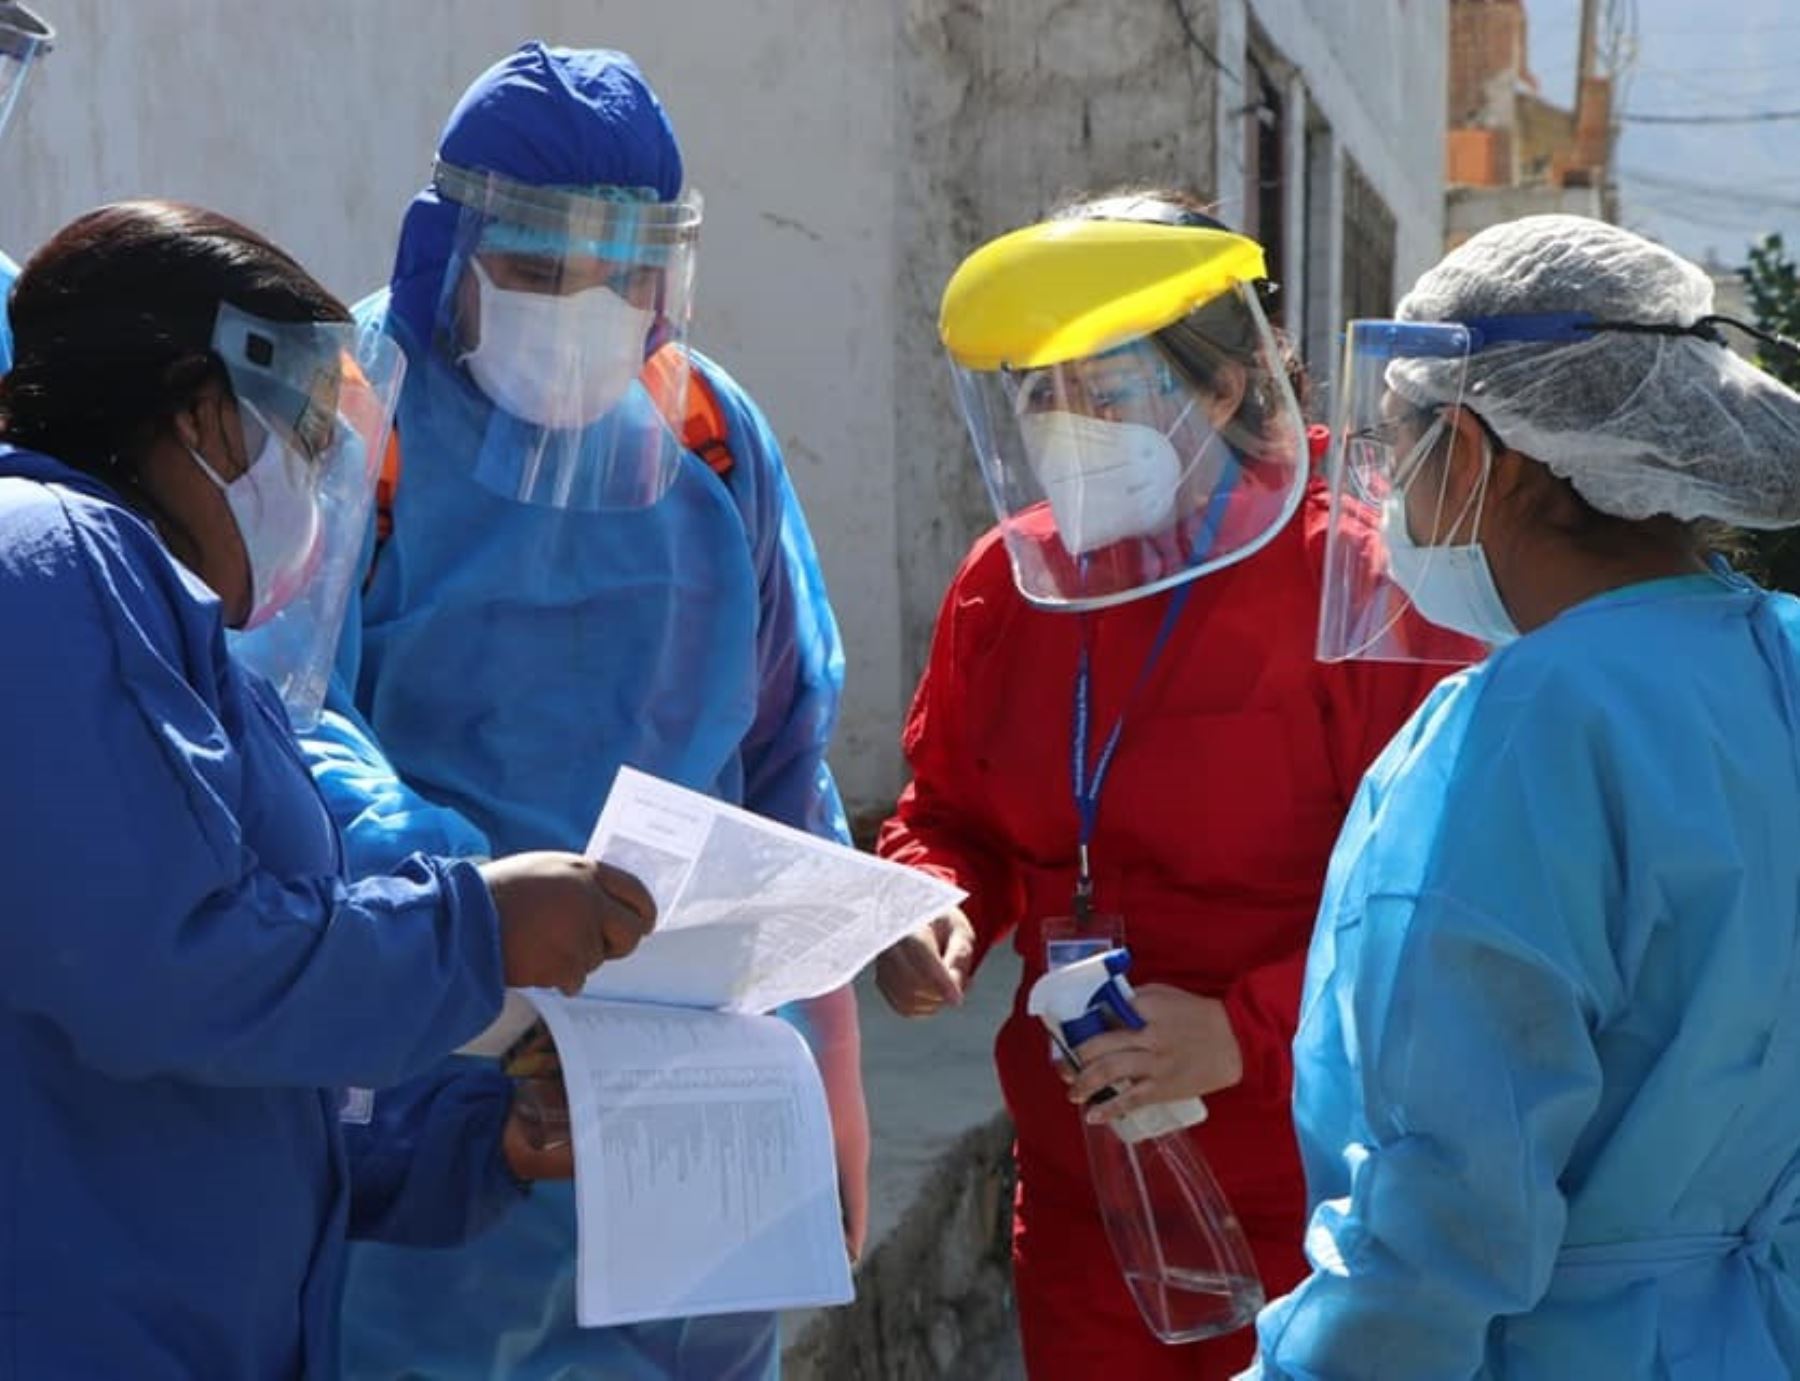 El Ministerio de Salud ejecutará el operativo Pirca en los distritos de Chimbote y Nuevo Chimbote, en Áncash, para detener cadena de contagios de covid-19. ANDINA/Difusión